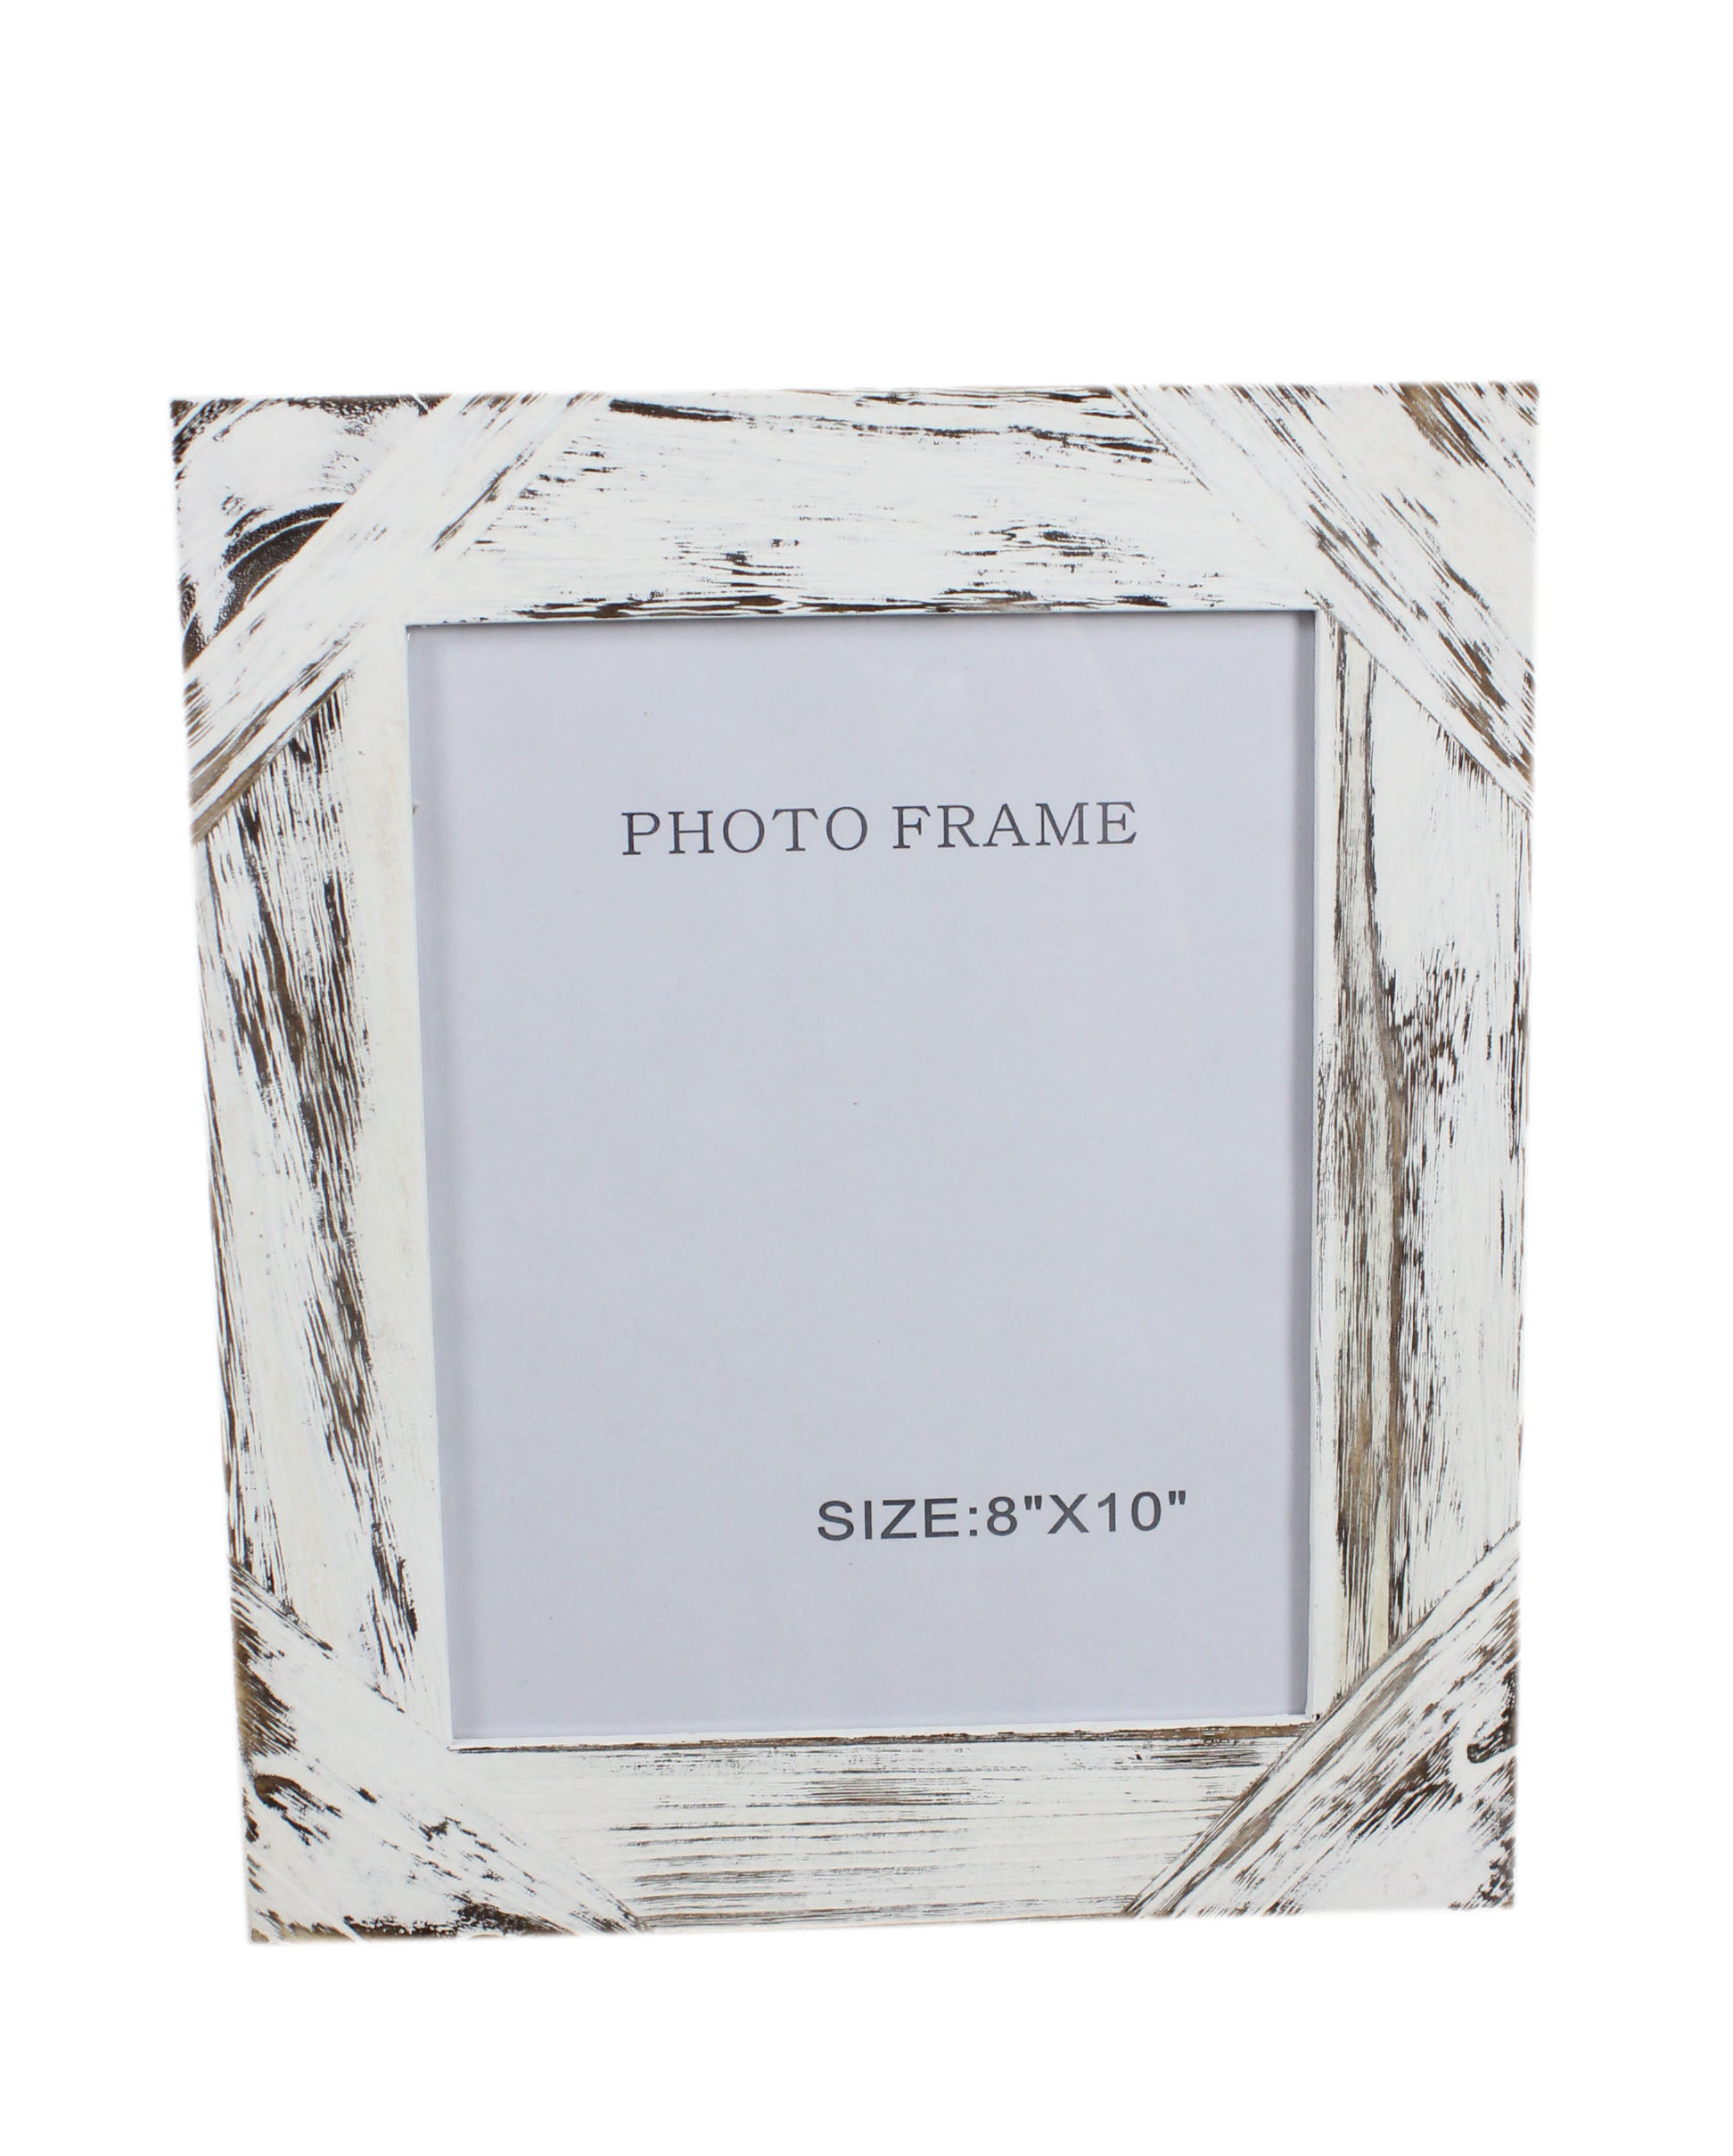 Rustic Frame Mockup,Wooden Frame-5392